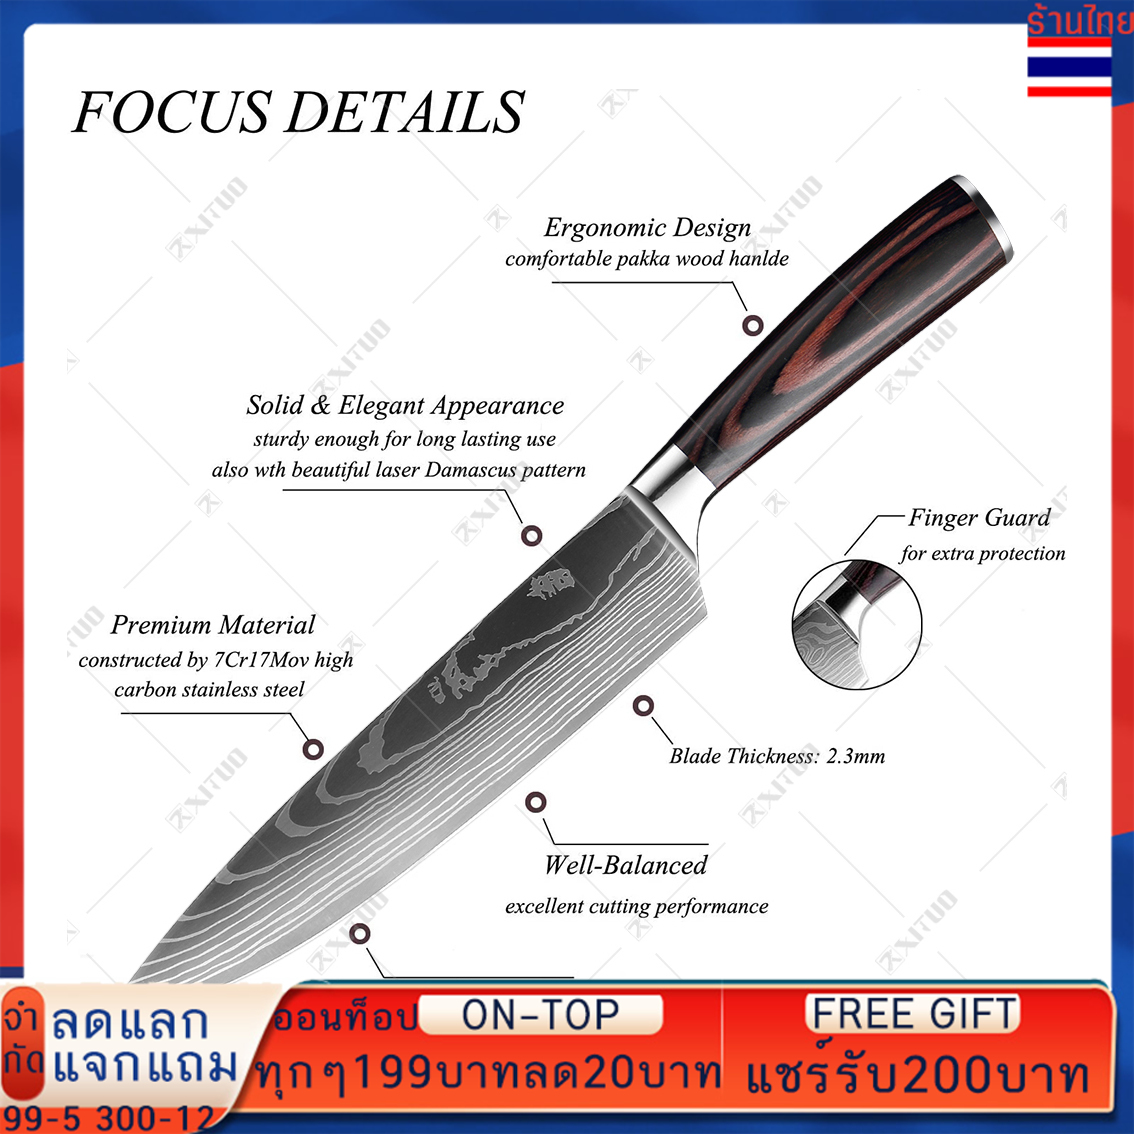 มีดทำครัว มีดครัว มีดปอกผลไม้ มีดตัดผลไม้ 3.5 Inch Japanese Chef Knives 7CR17 440C Stainless Steel Set Laser Damascus Drawing Slicer Meat Santoku Cleaver Tool มีดเชพ